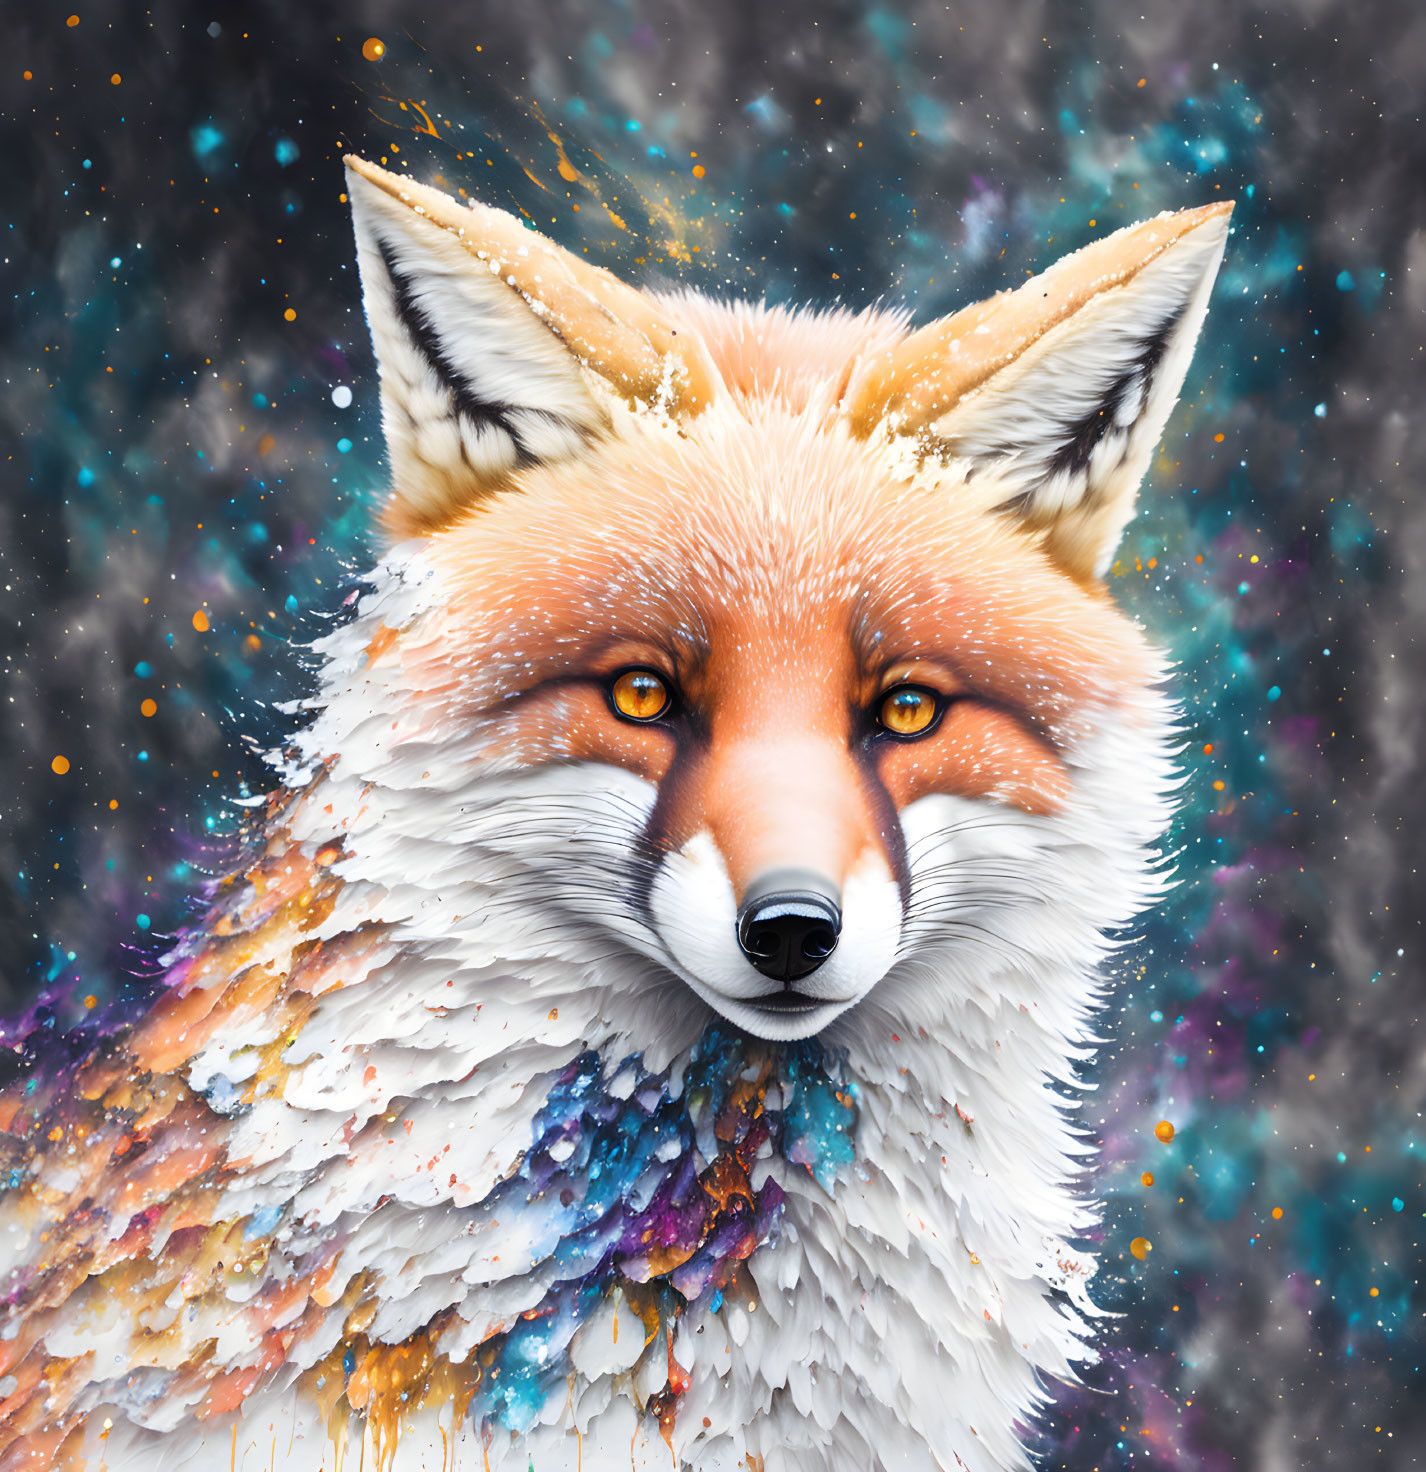 Magical Fox